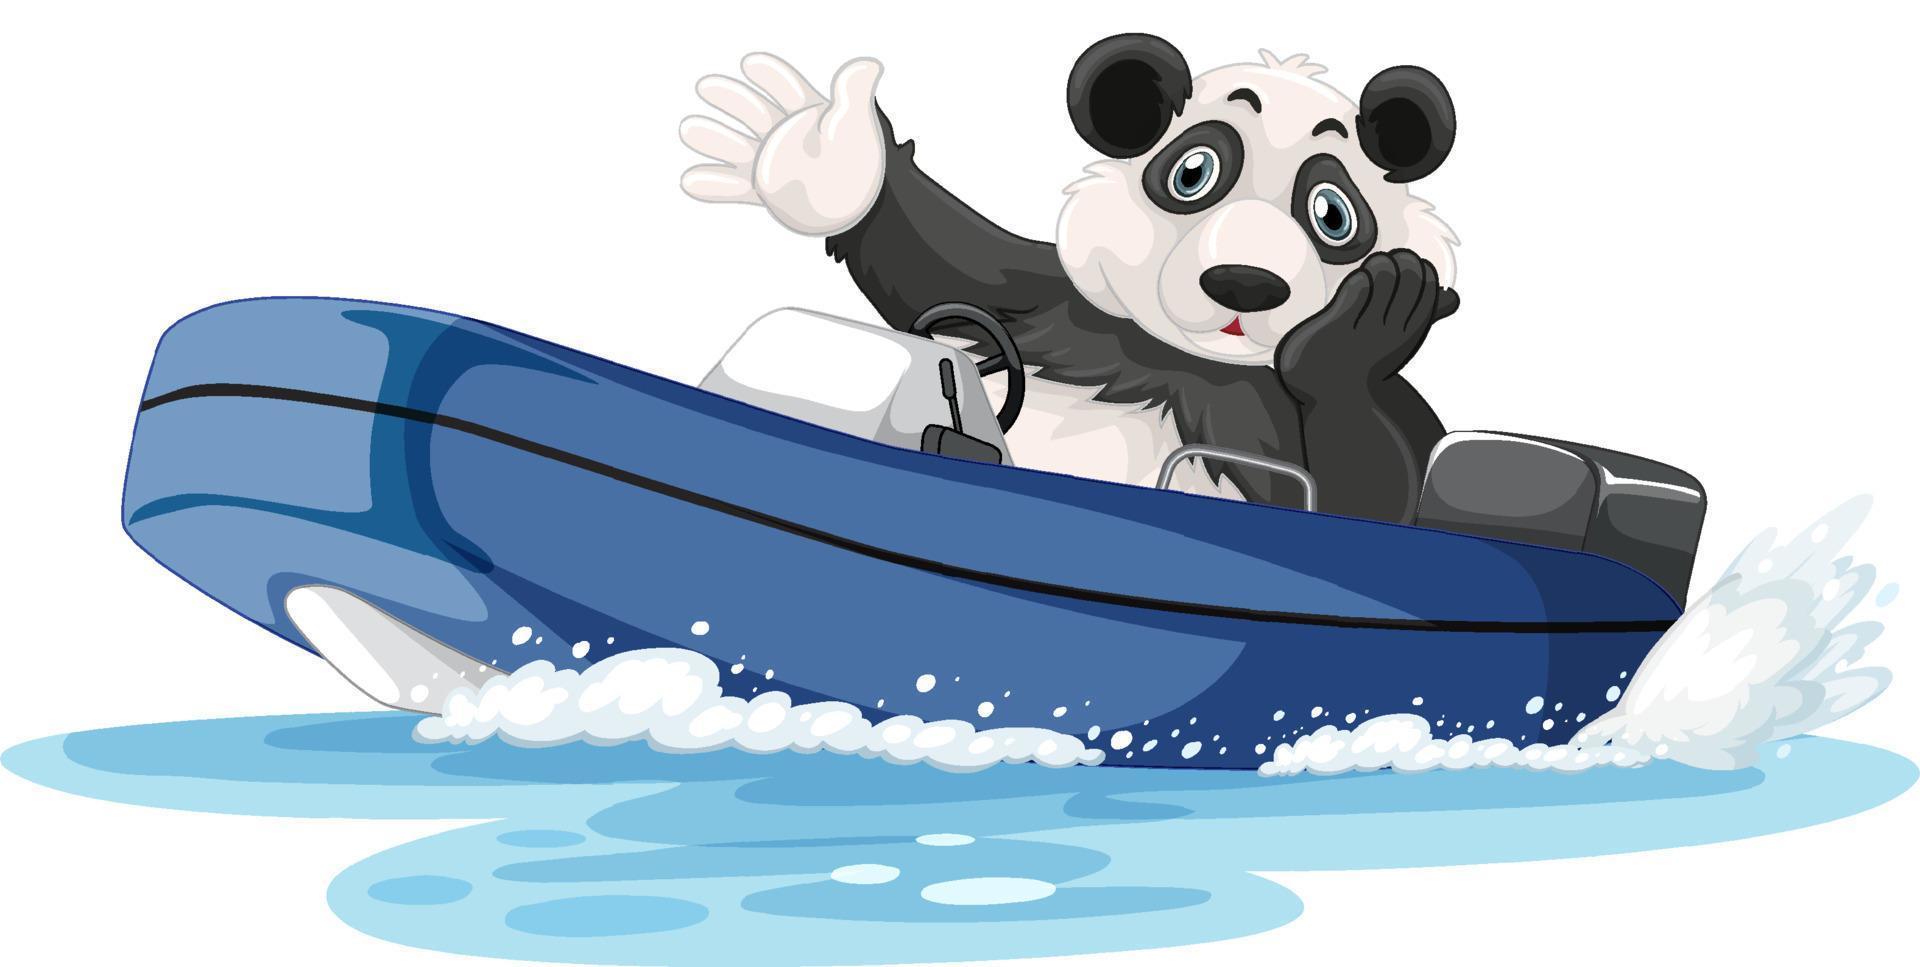 panda op een motorboot in cartoonstijl vector